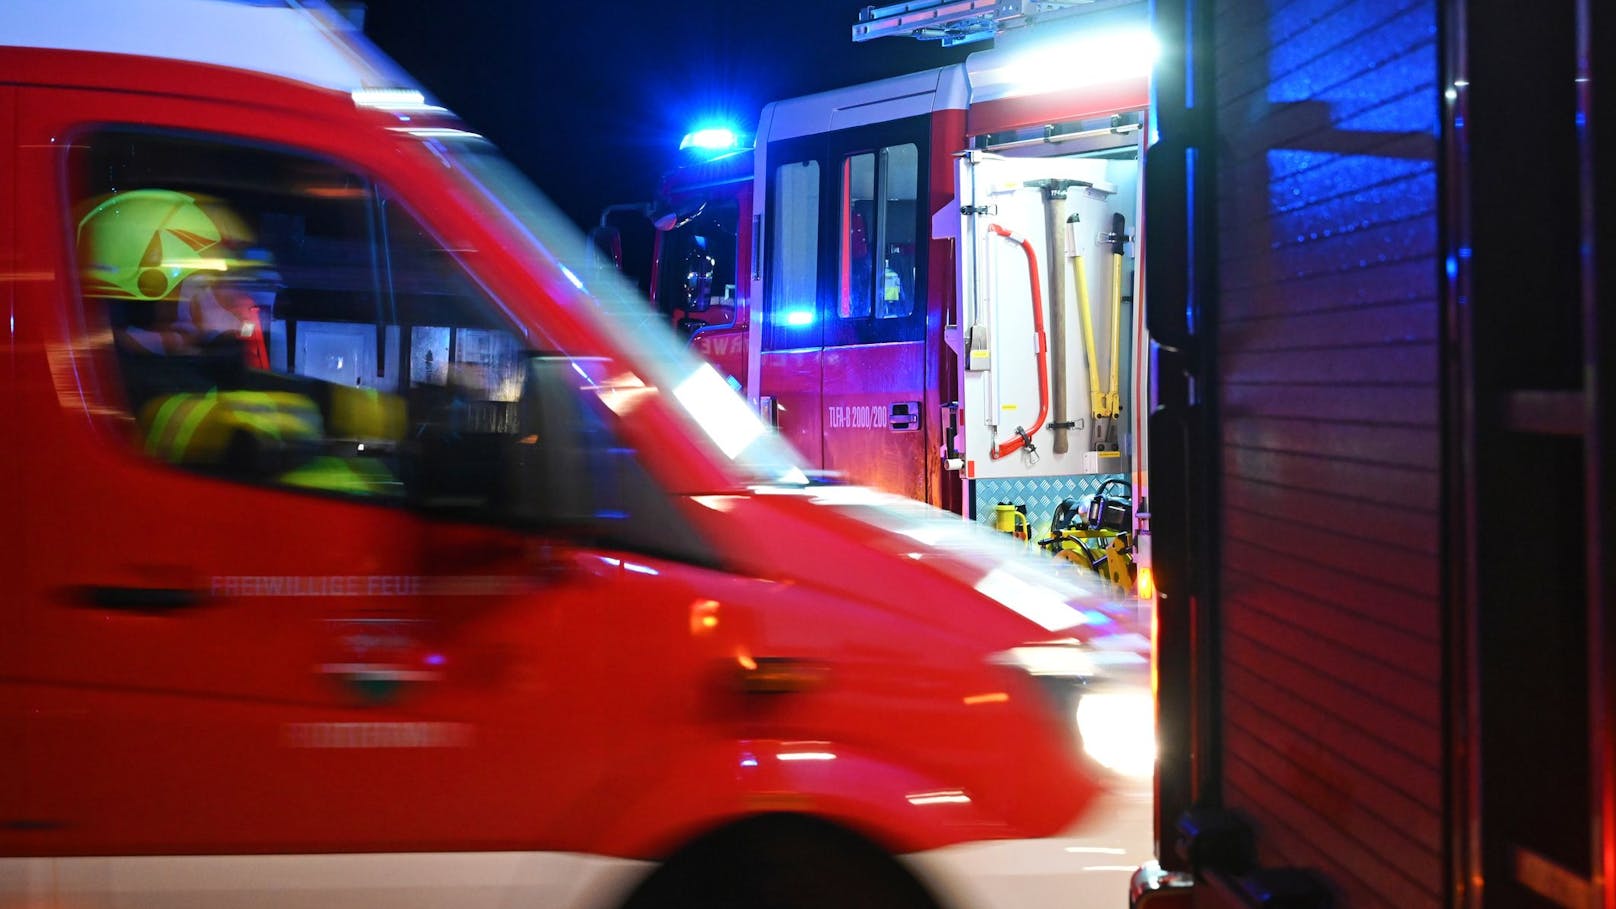 Feuerwehr in Wien blockiert – Polizei muss einschreiten